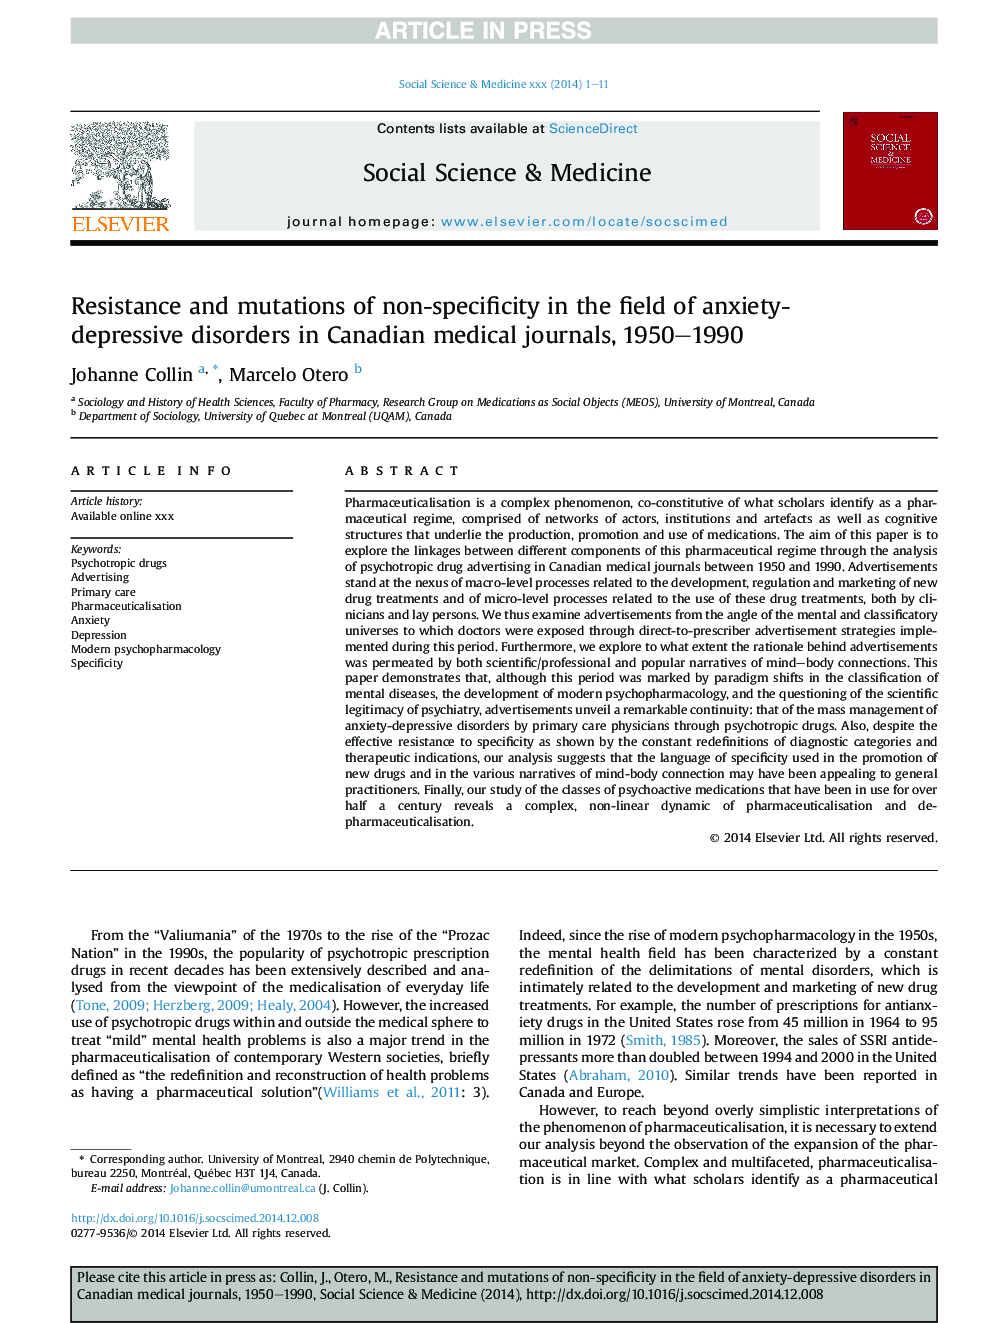 مقاومت و جهش های غیر اختصاصی در زمینه اختلالات اضطراب افسردگی در مجلات پزشکی کانادا، 1990-1990 